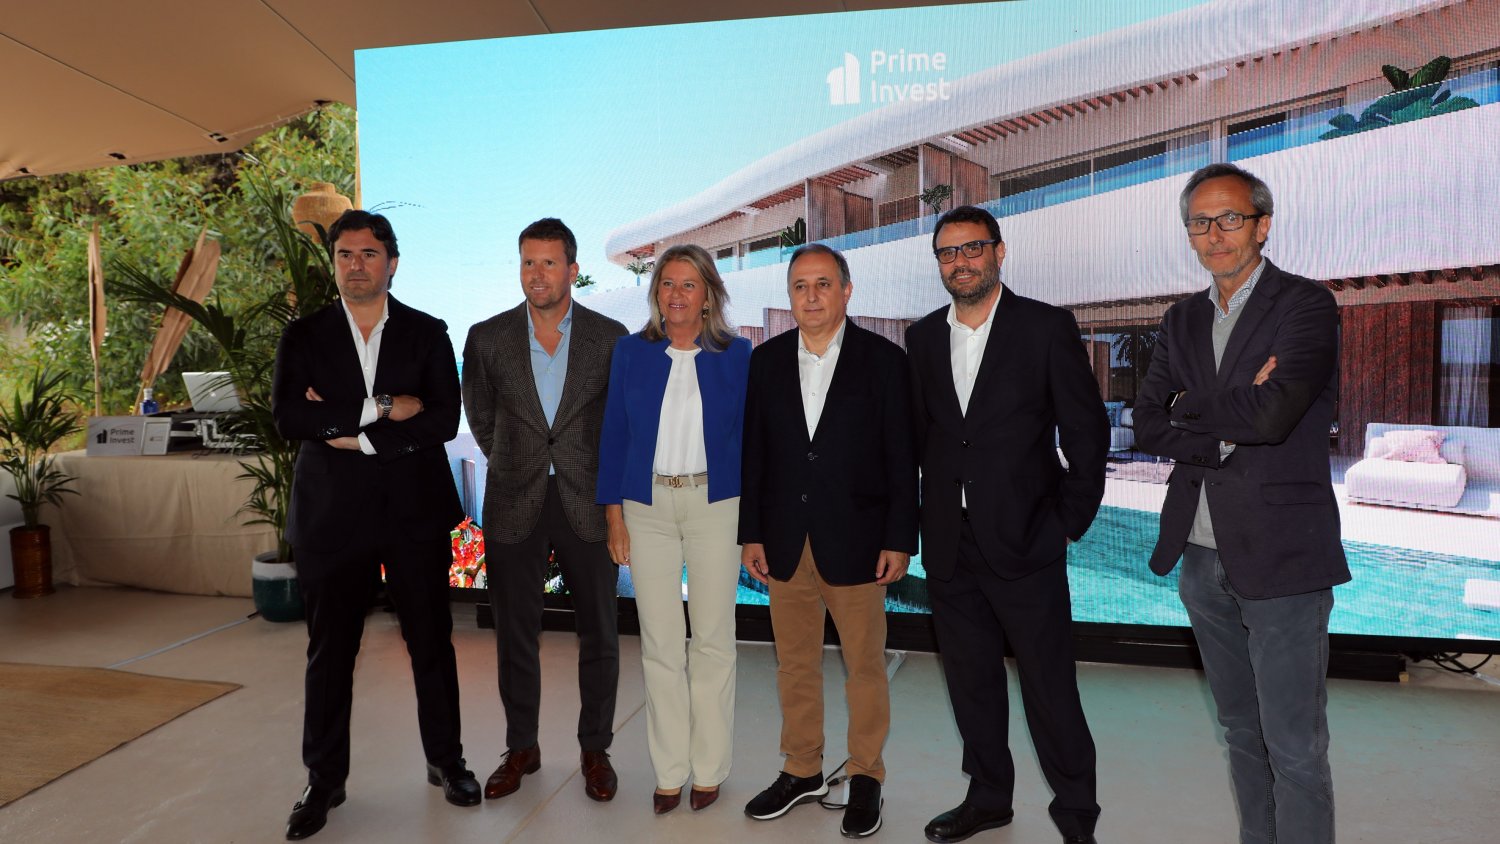 La alcaldesa subraya la atracción de Marbella “para seguir generando inversión